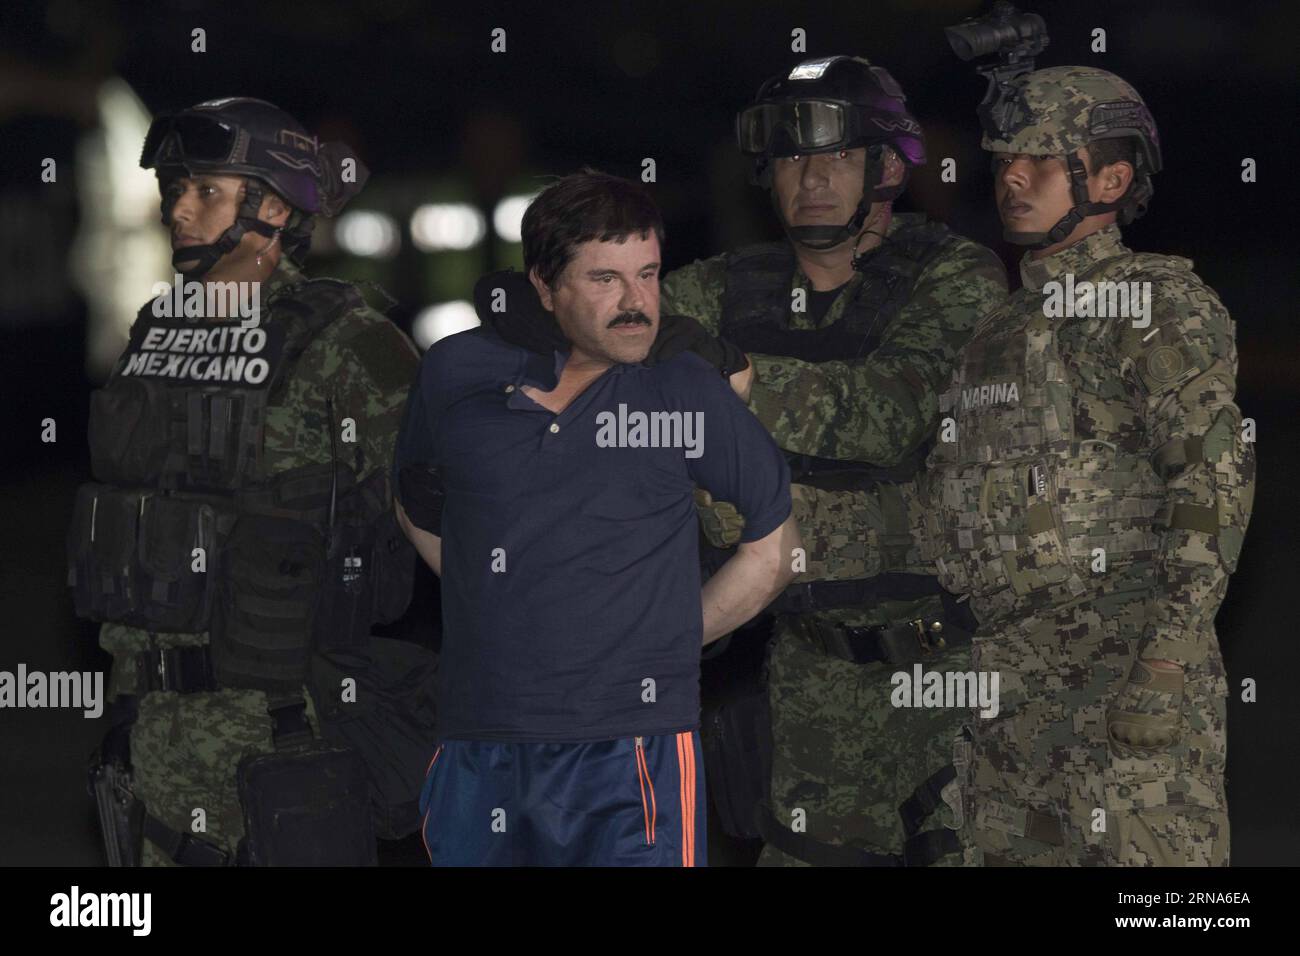 (160109) -- MEXICO, 8 janvier 2016 -- des soldats escortent Joaquin Guzman Loera, alias El Chapo , à son arrivée au hangar du bureau du procureur général, à Mexico, capitale du Mexique, le 8 janvier 2016. Après un raid tôt le matin dans la ville de Los Mochis, dans l État du Sinaloa, dans le nord-ouest du Mexique, par la police et les marines mexicaines vendredi, le chef du cartel du Sinaloa, Joaquin Guzman Loera, a été repris, six mois après son deuxième emprisonnement. Alejandro Ayala) MEXICO-MEXICO CITY-SECURITY-GUZMAN LOERA-RECAPTURE PedroxMera PUBLICATIONxNOTxINxCHN 160109 Mexico Jan 8 2016 soldats Escort Joaquin Banque D'Images